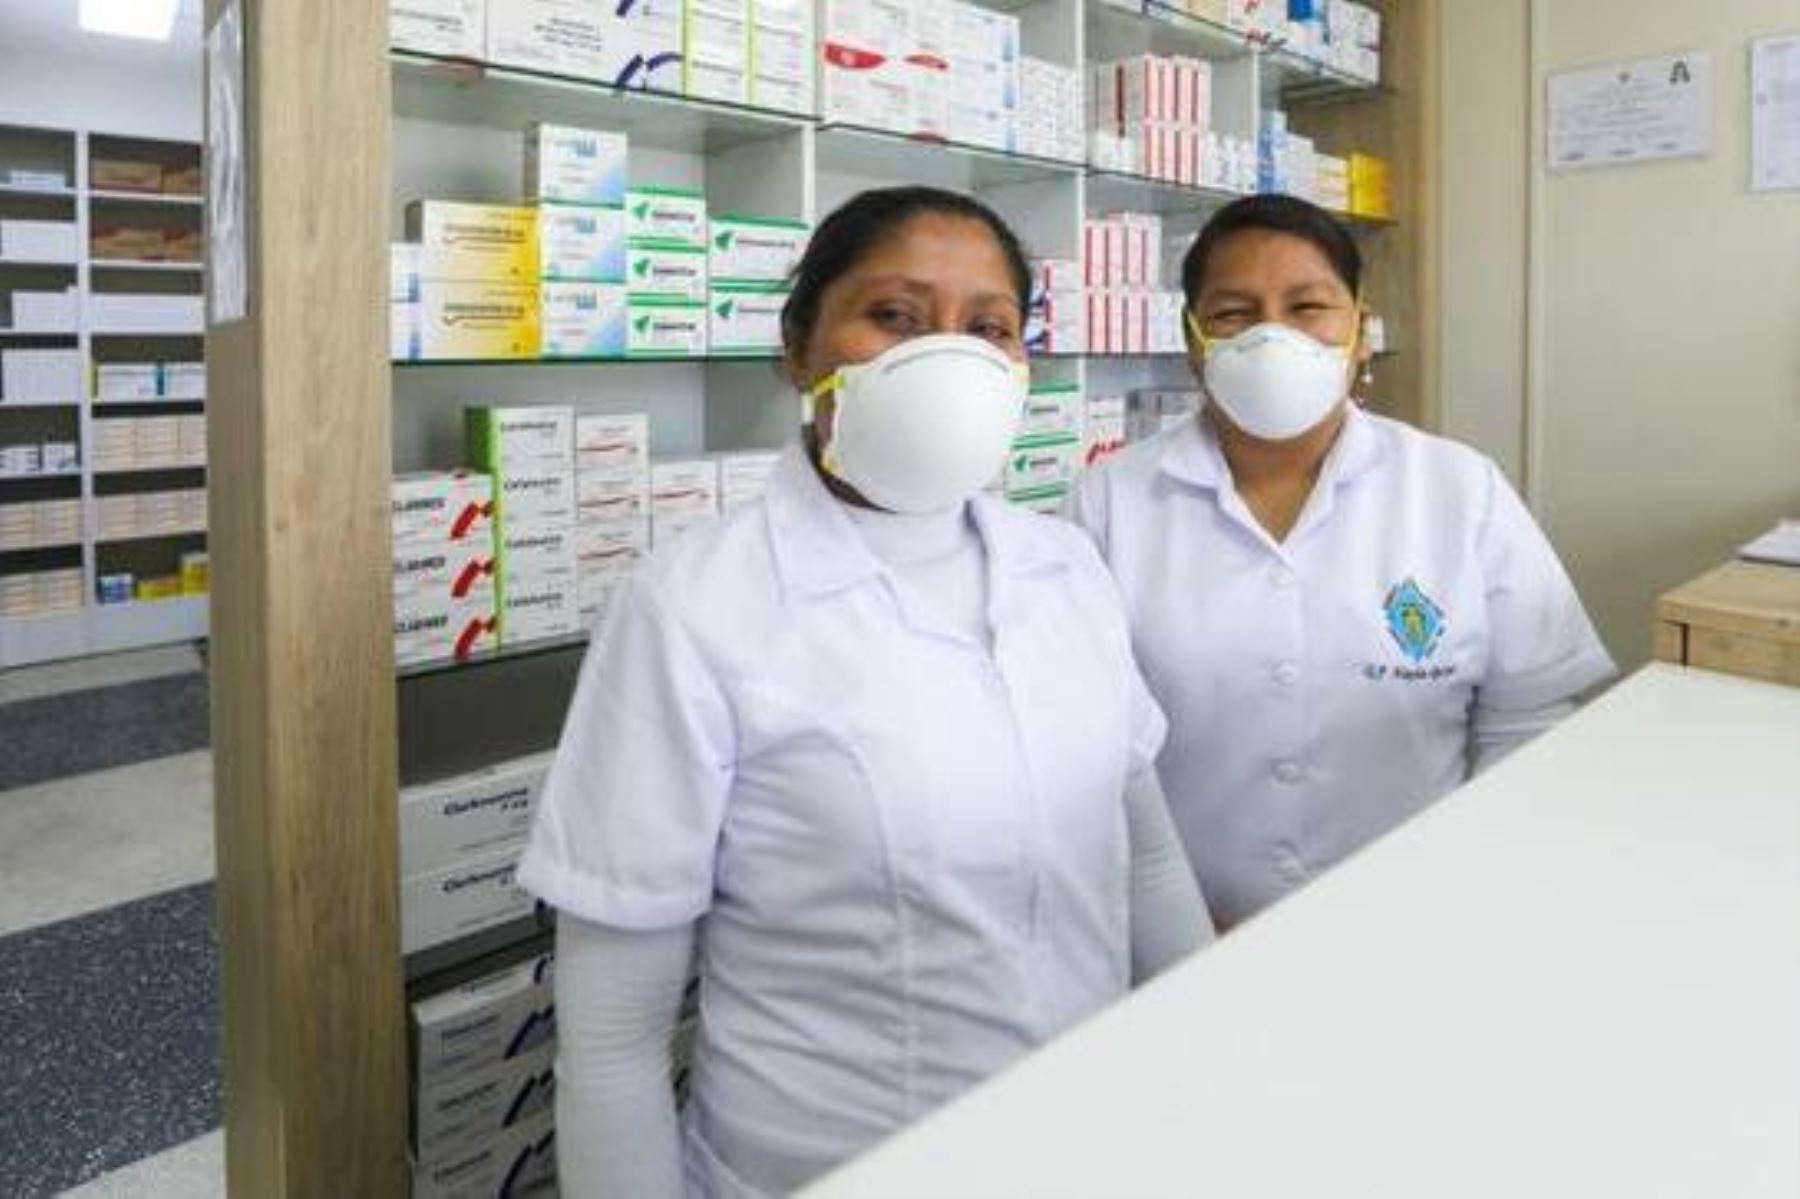 Minsa recomienda pedir orientación al farmacéutico sobre uso adecuado de medicamentos. Foto: ANDINA/Difusión.